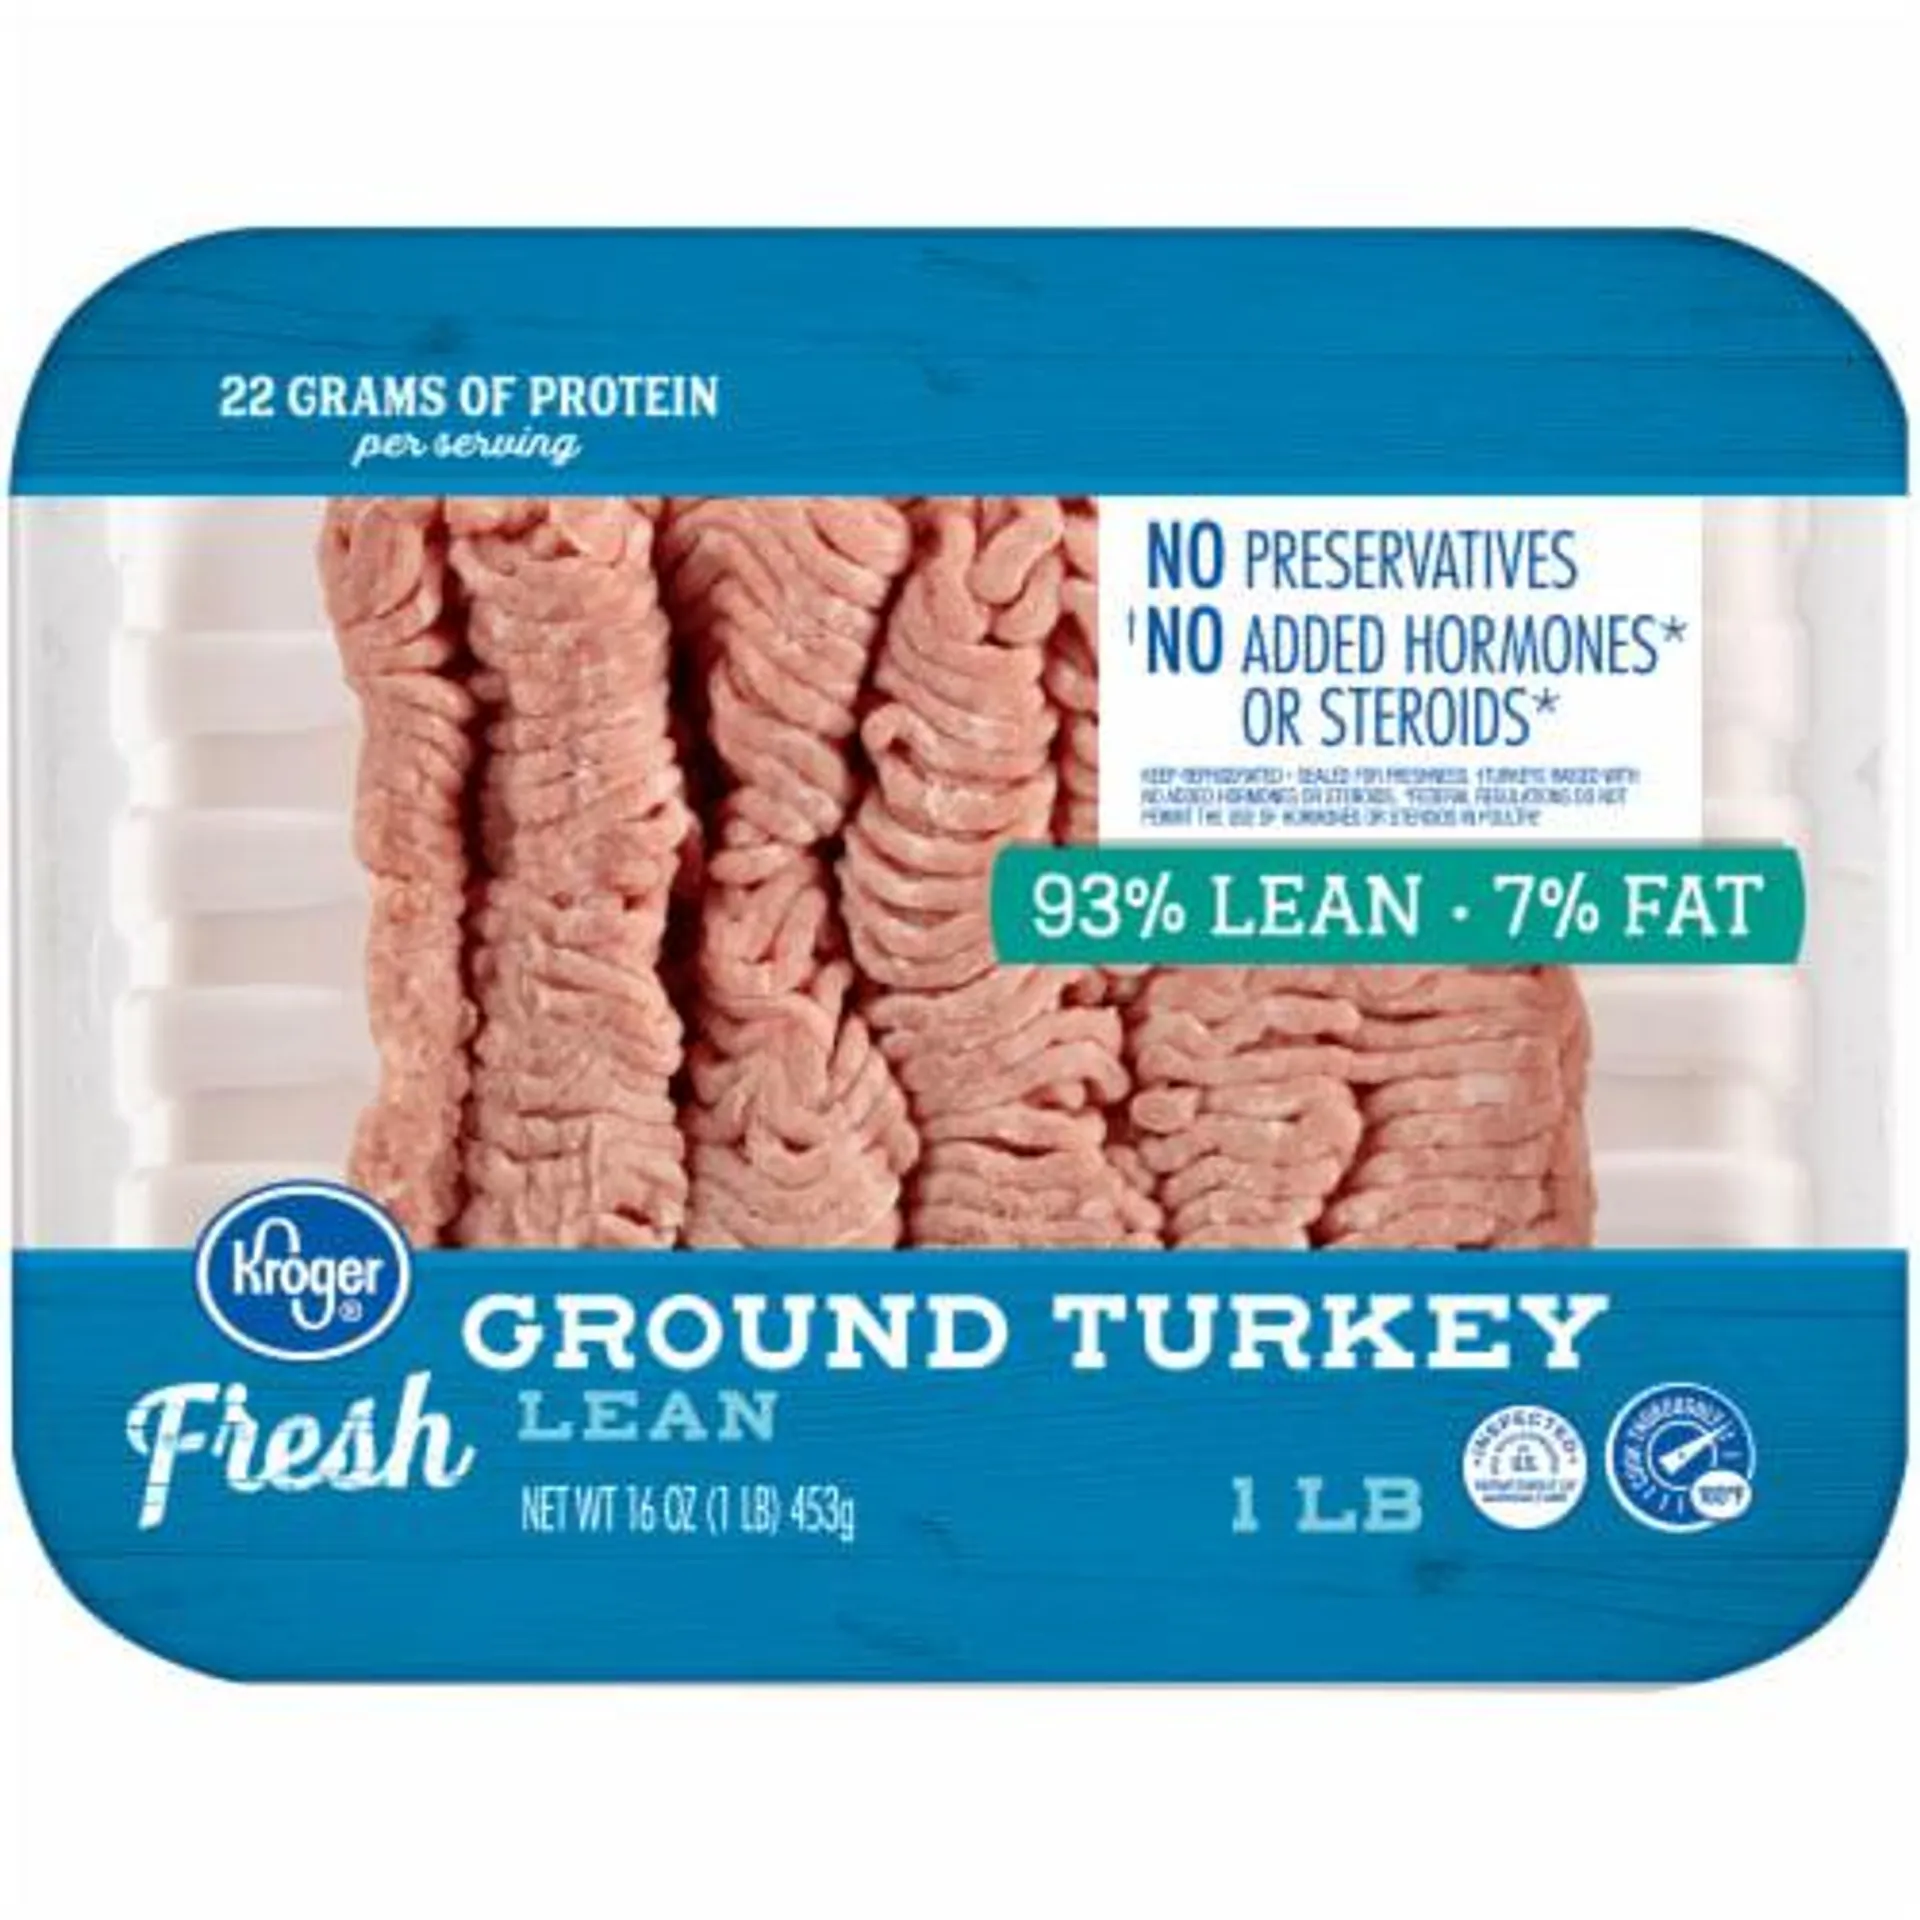 Kroger® Lean Fresh Ground Turkey